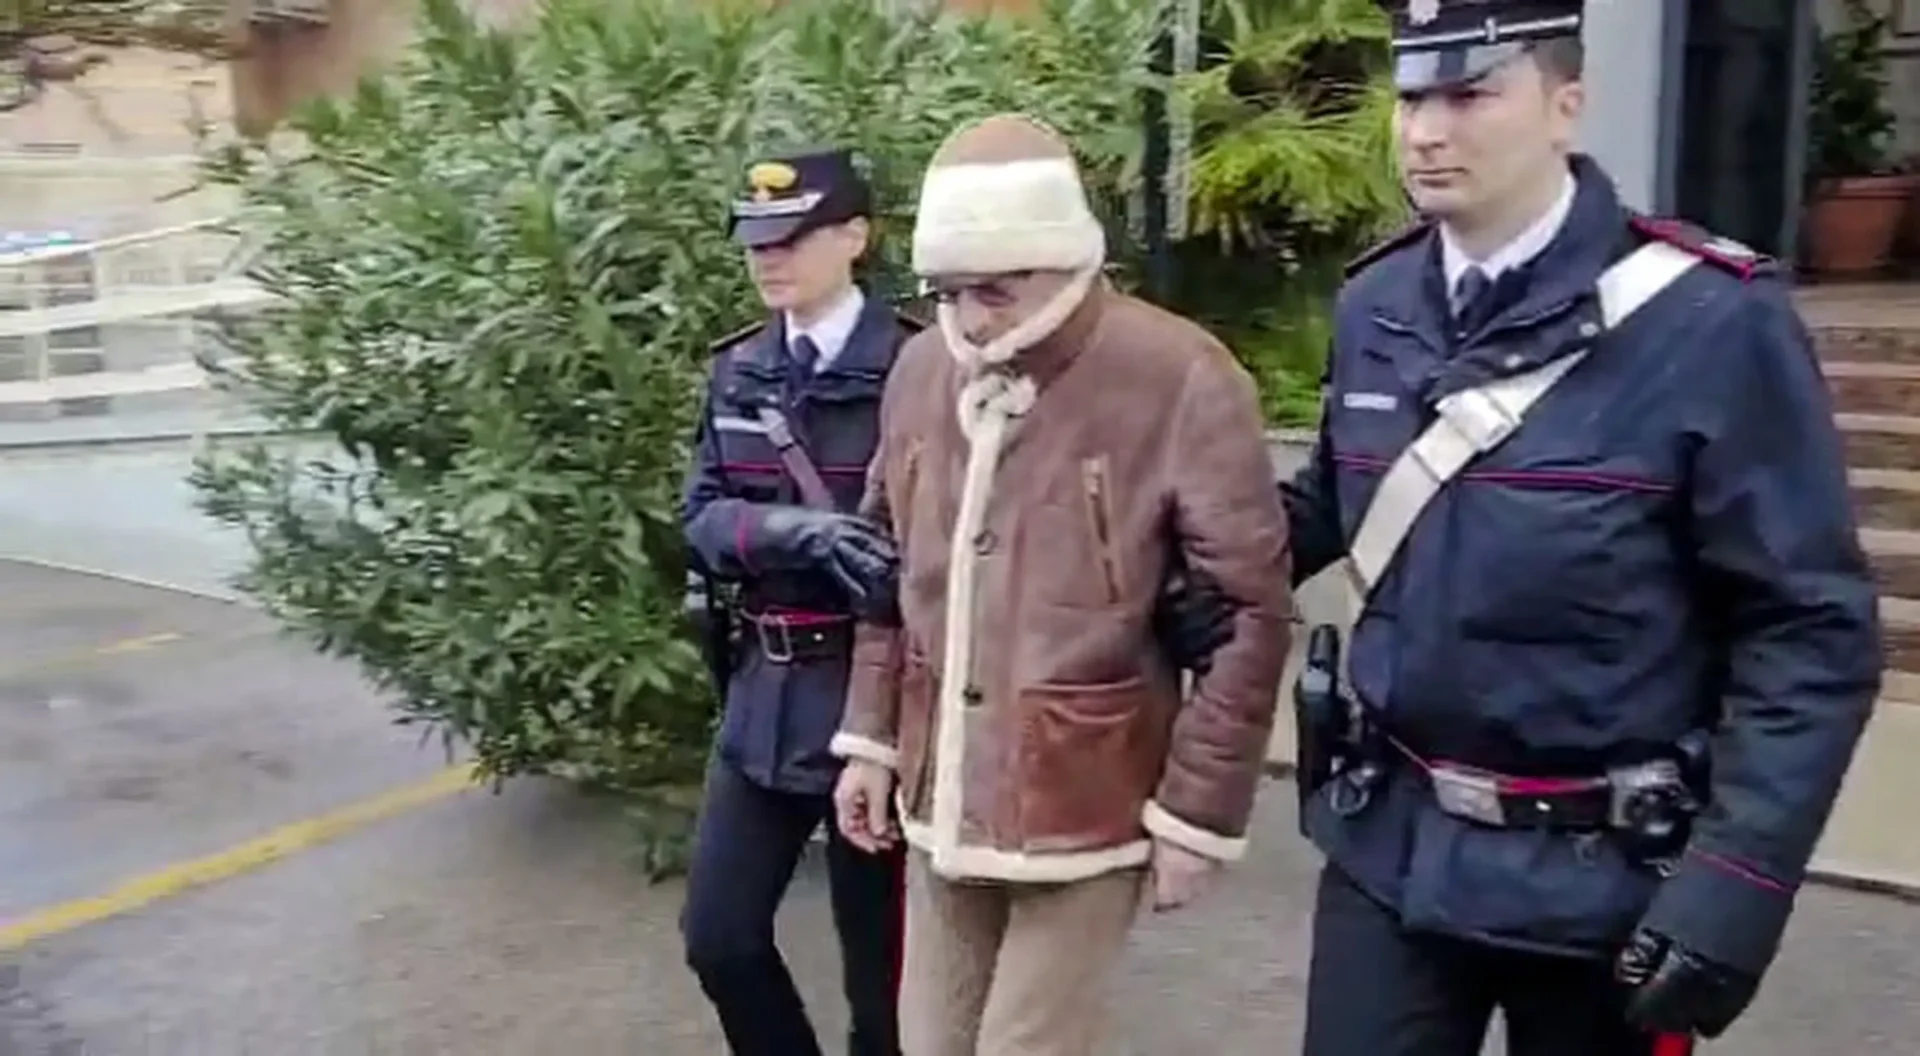 Capturan al capo de la mafia más buscado de Italia tras 30 años prófugo